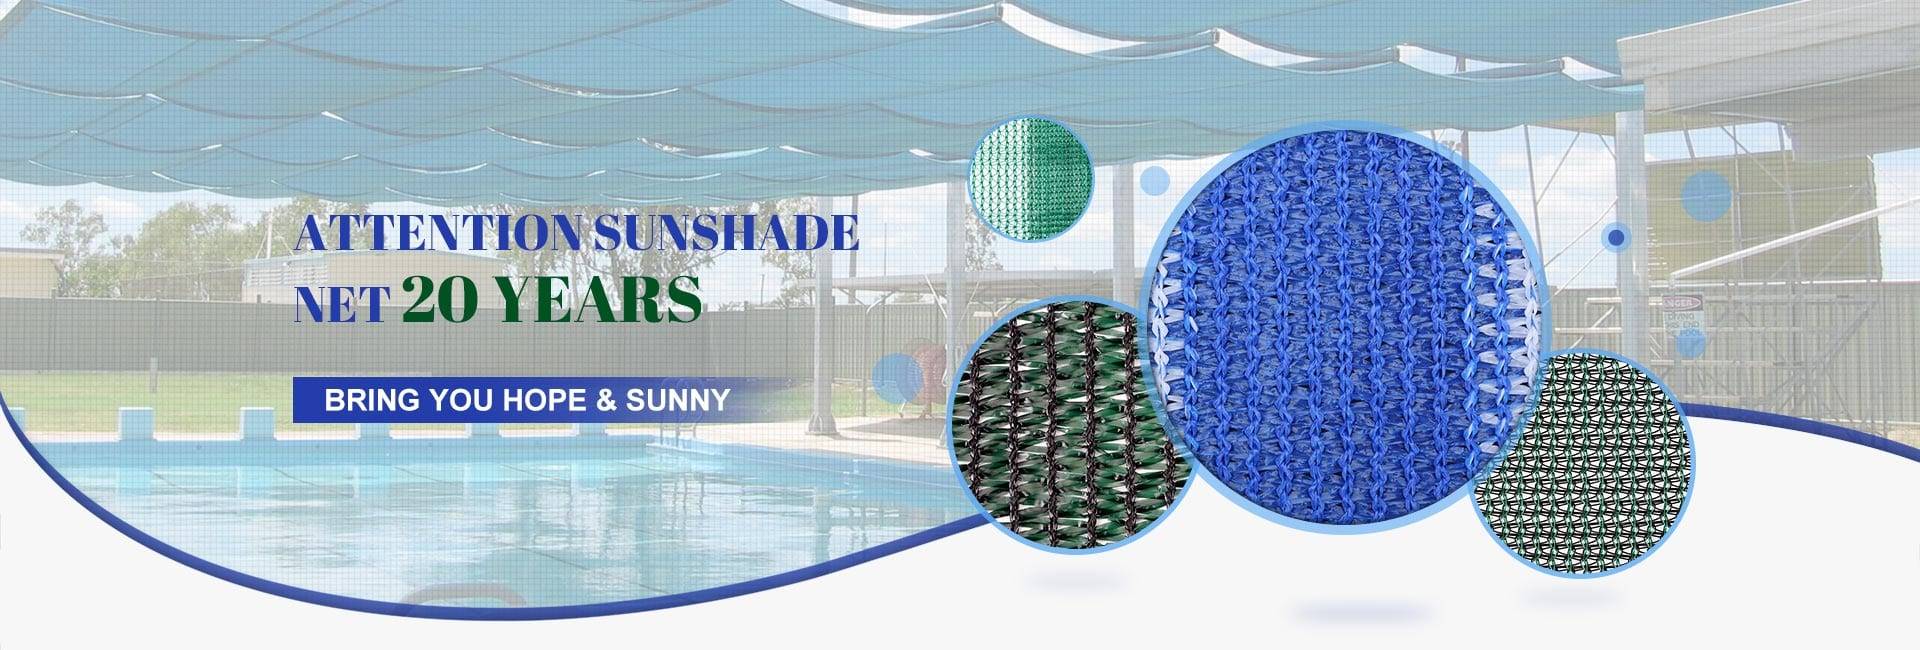 Attention Sunshade Net 20 Years